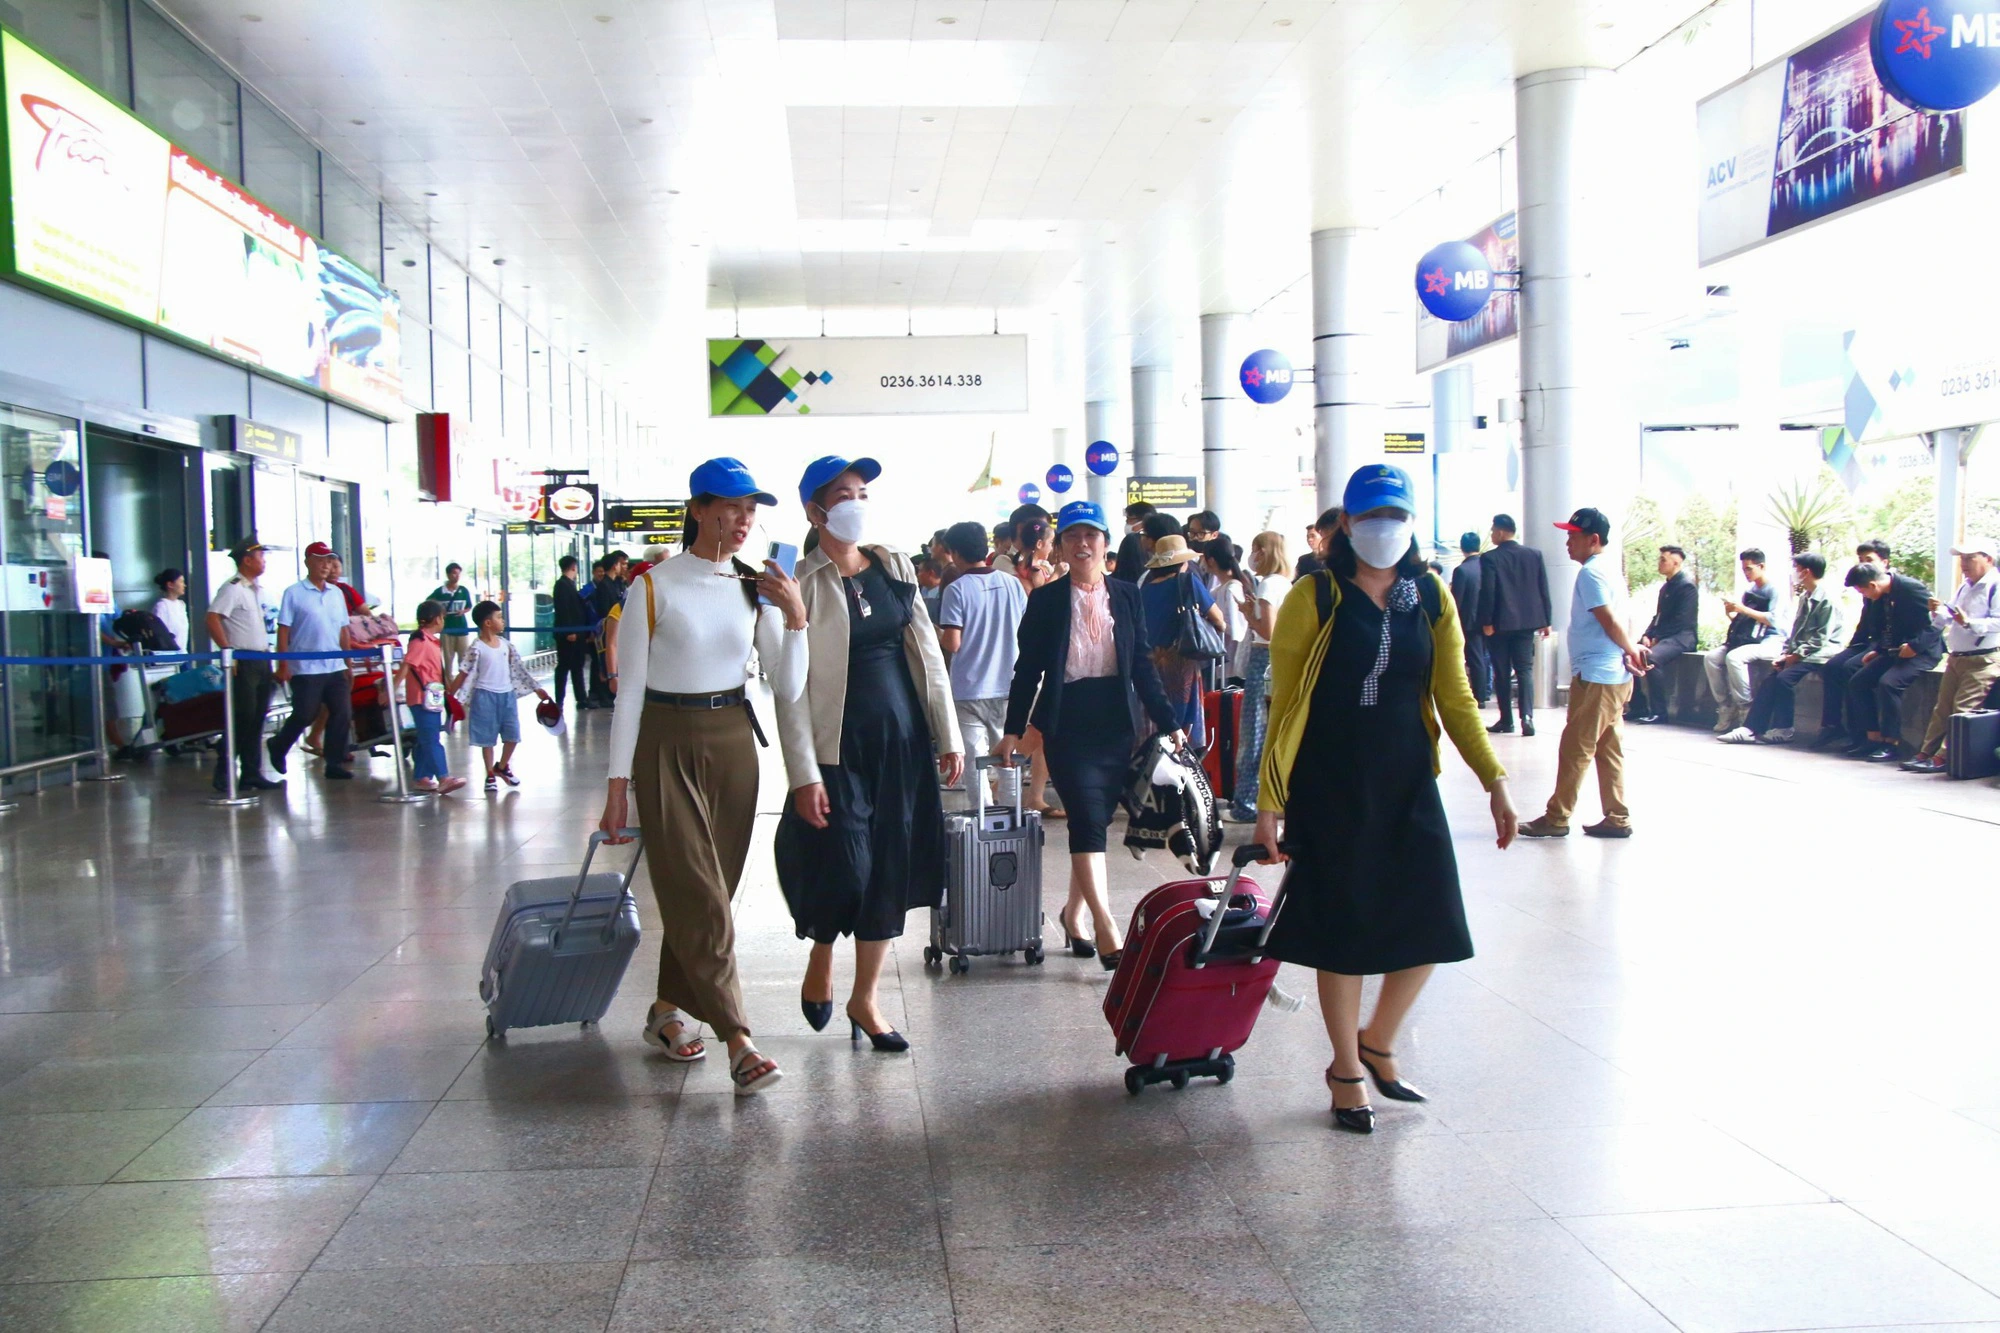 Khách bỏ quên túi xách chứa 300 triệu đồng ở sân bay Đà Nẵng- Ảnh 1.